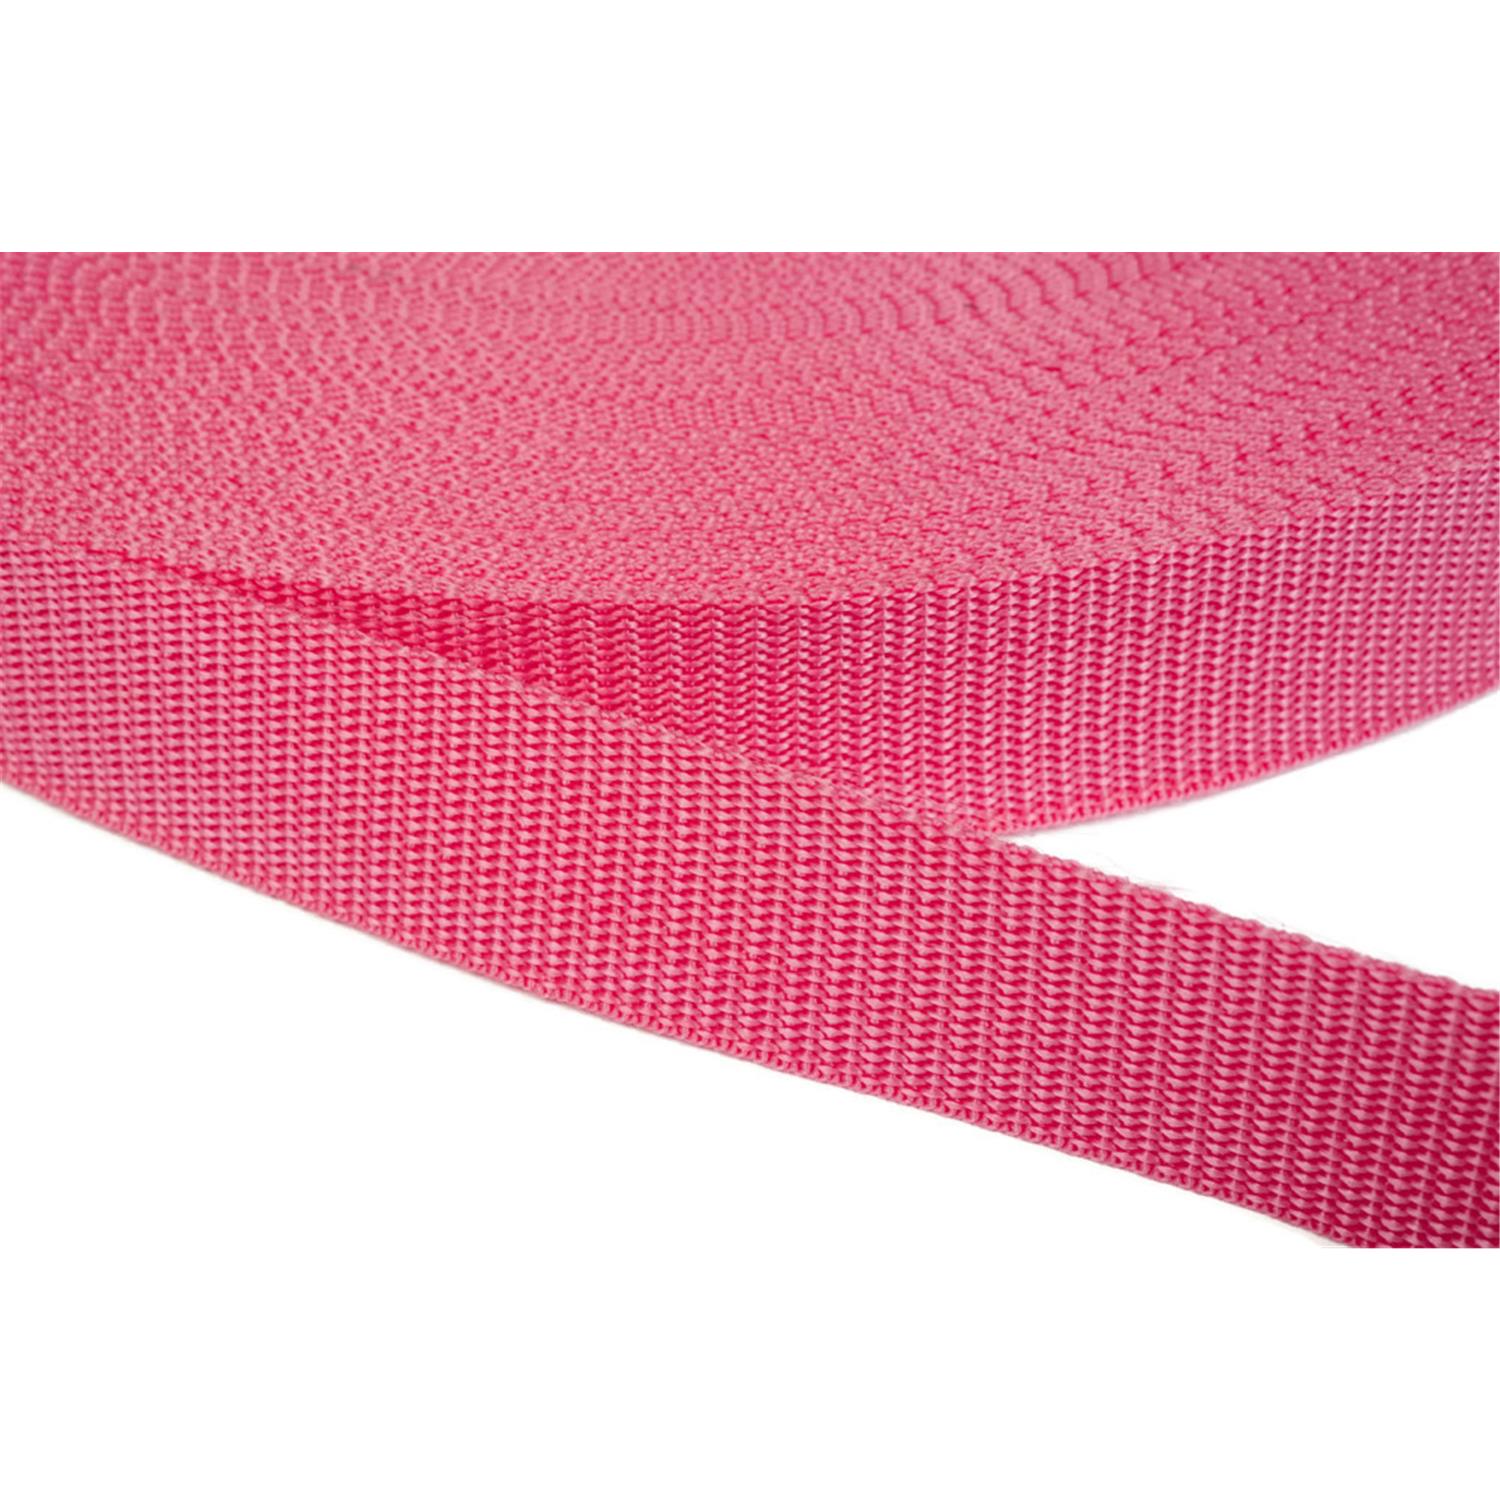 Gurtband 20mm breit aus Polypropylen in 41 Farben 13 - pink 06 Meter